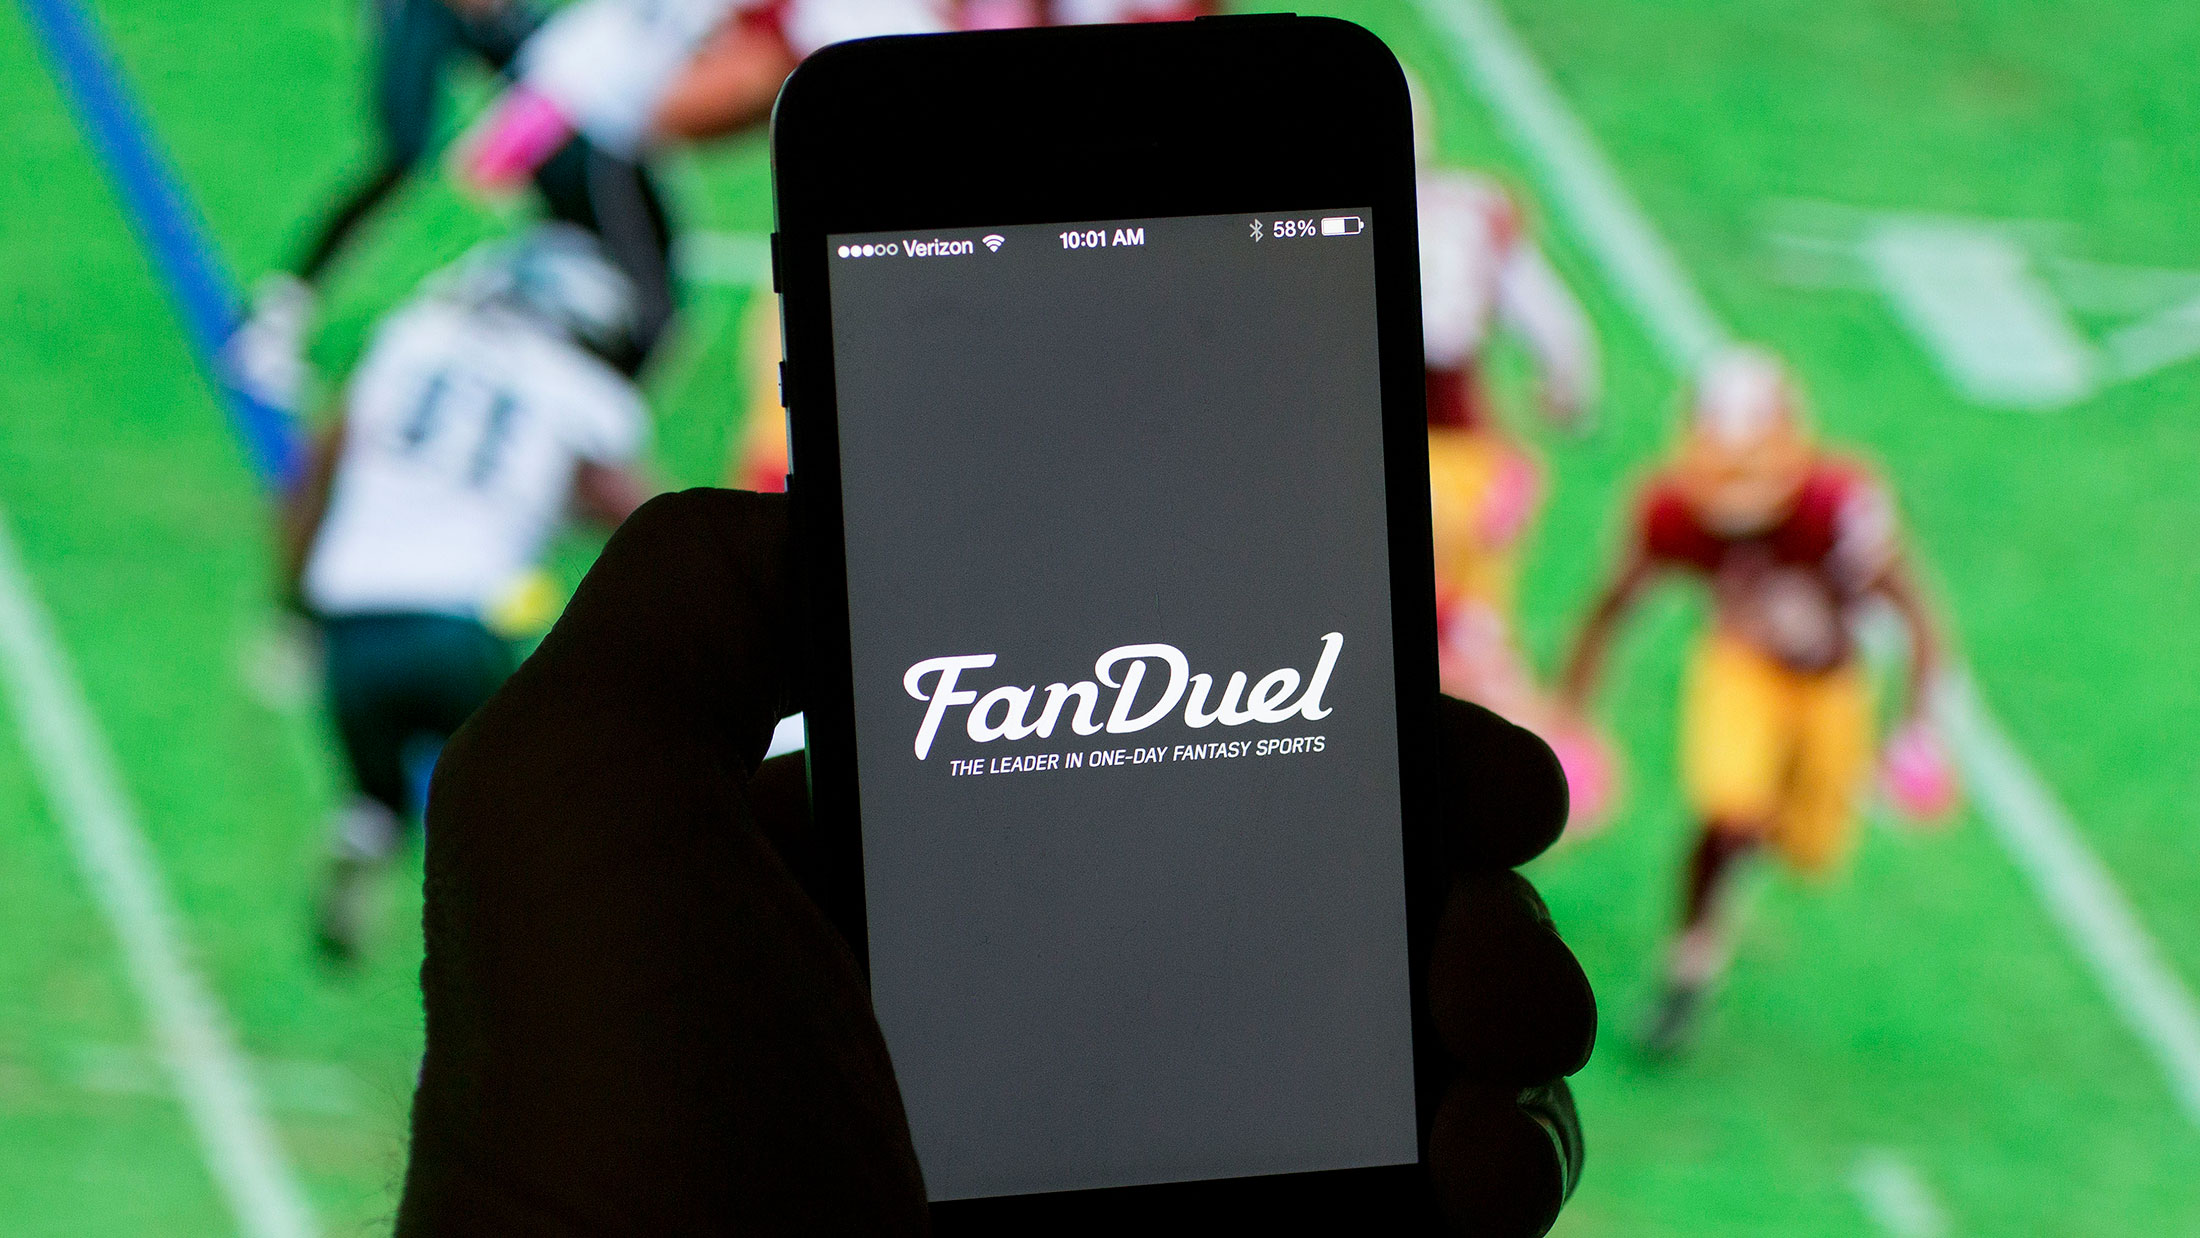 The FanDuel Inc. logo on a smartphone.
